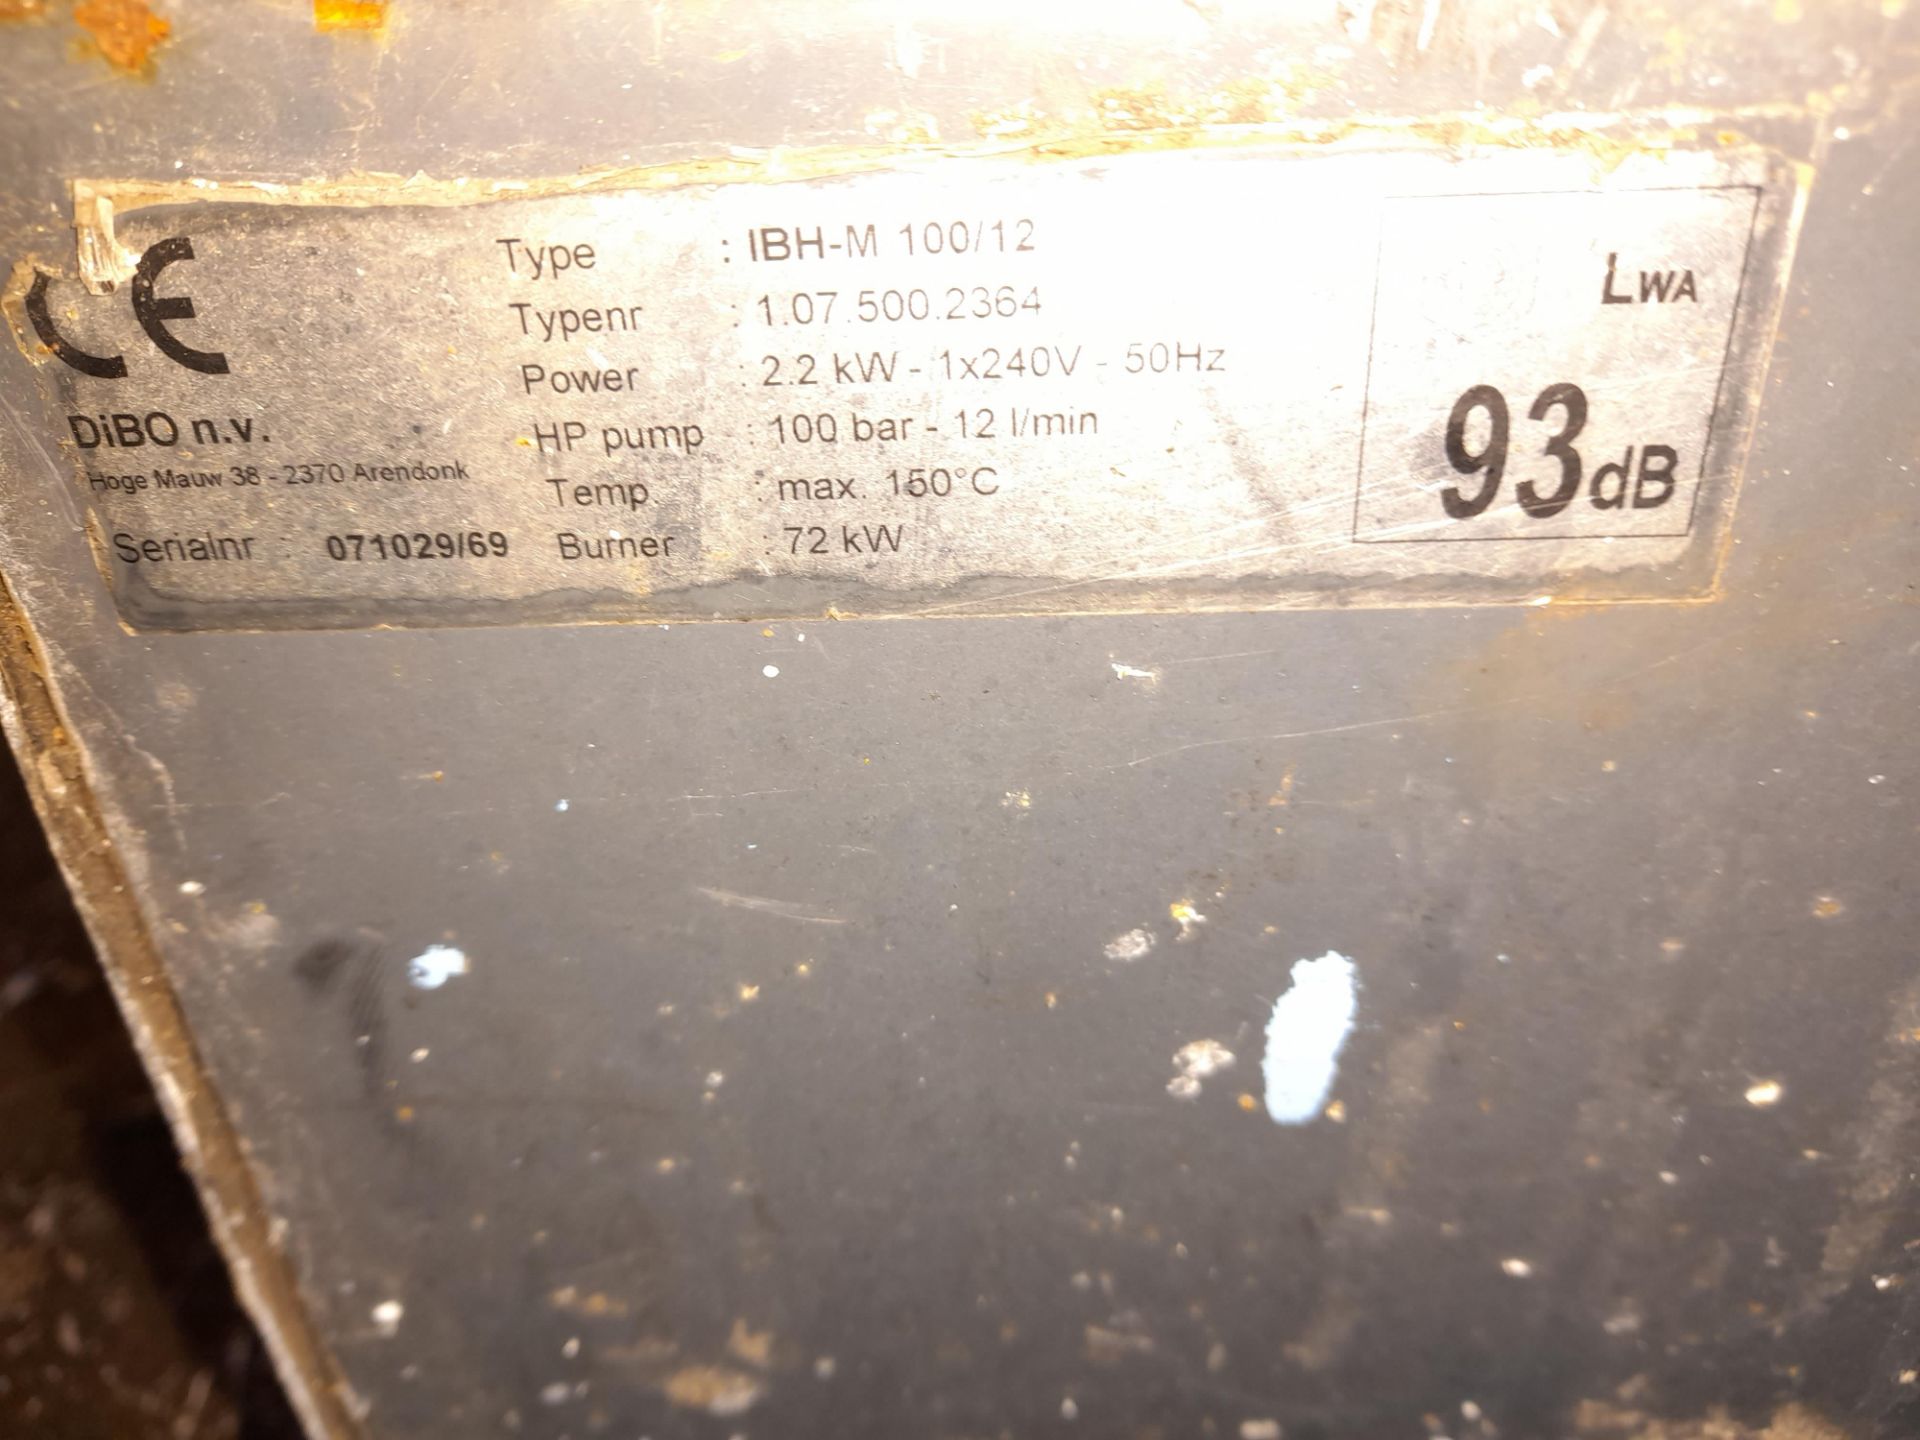 Dibo 100 S4 pressure washer, 240V, to yard - Image 3 of 3